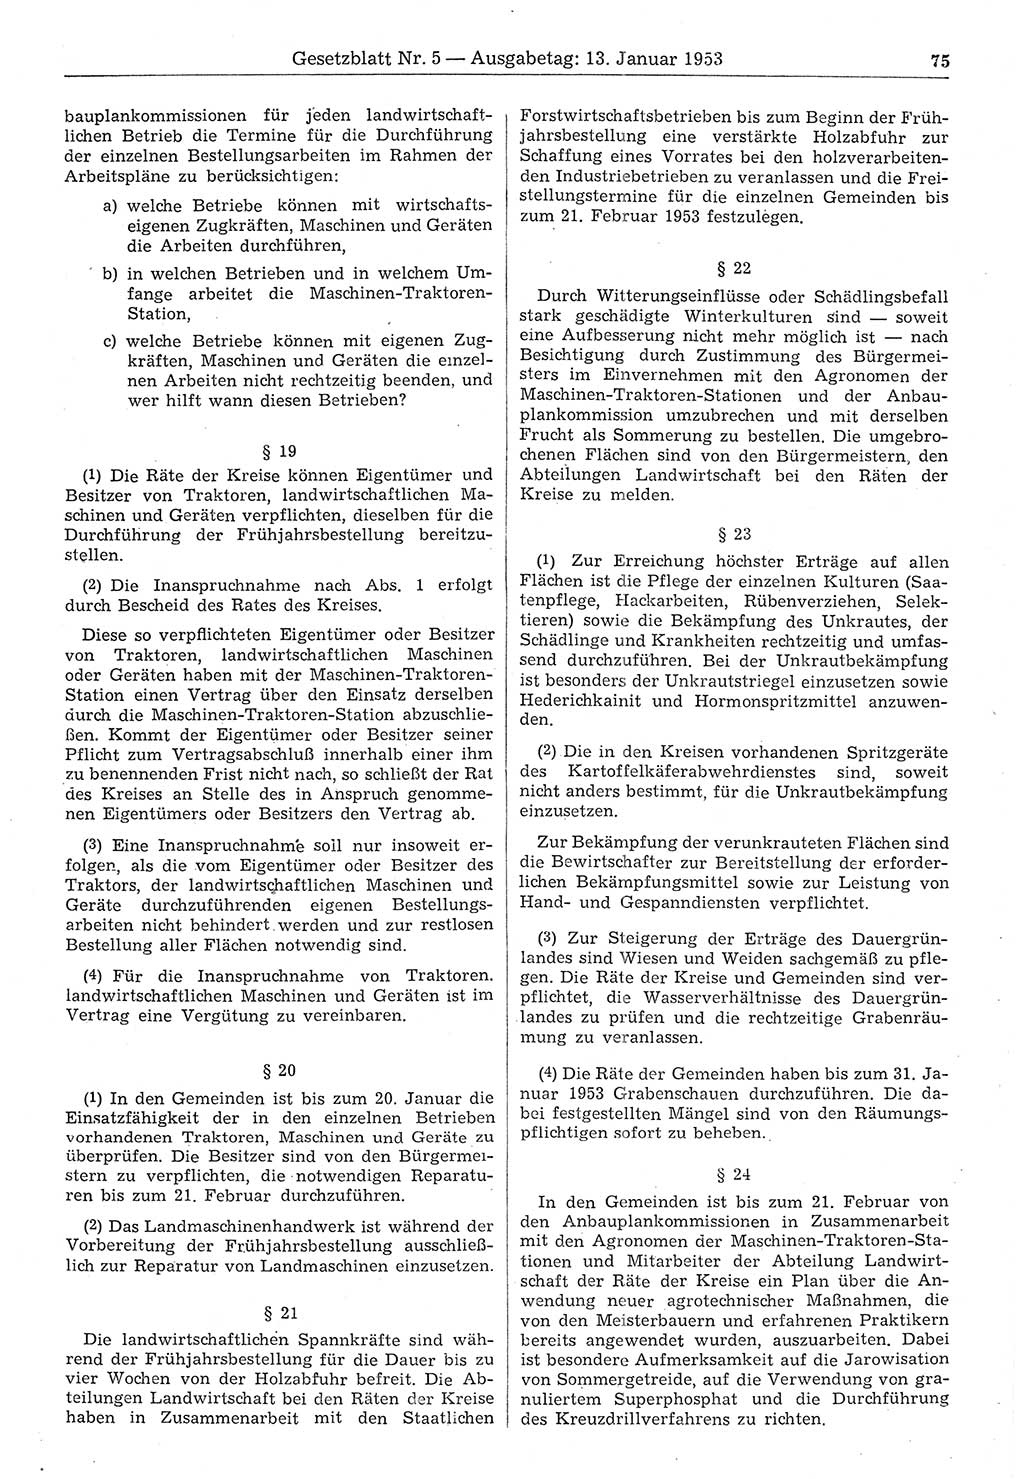 Gesetzblatt (GBl.) der Deutschen Demokratischen Republik (DDR) 1953, Seite 75 (GBl. DDR 1953, S. 75)